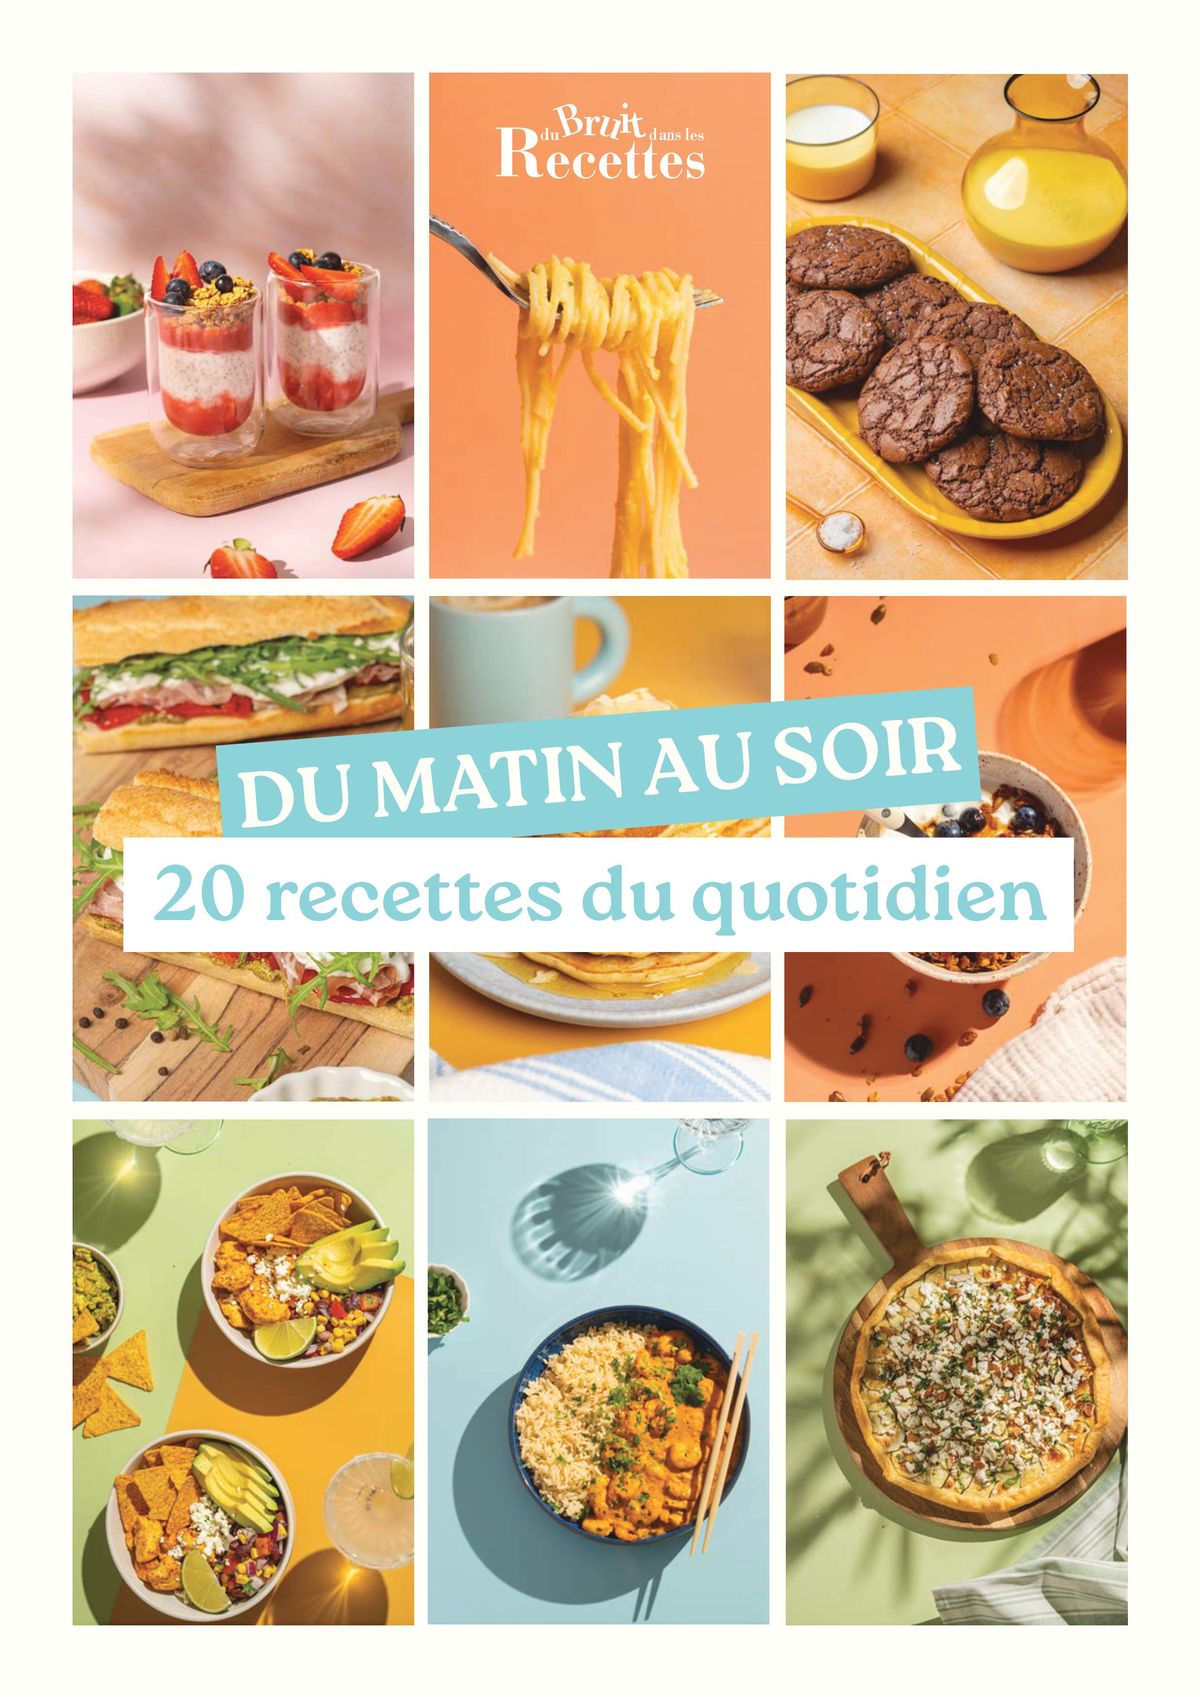 Catalogue Du Bruit dans la Cuisine Recettes, page 00001